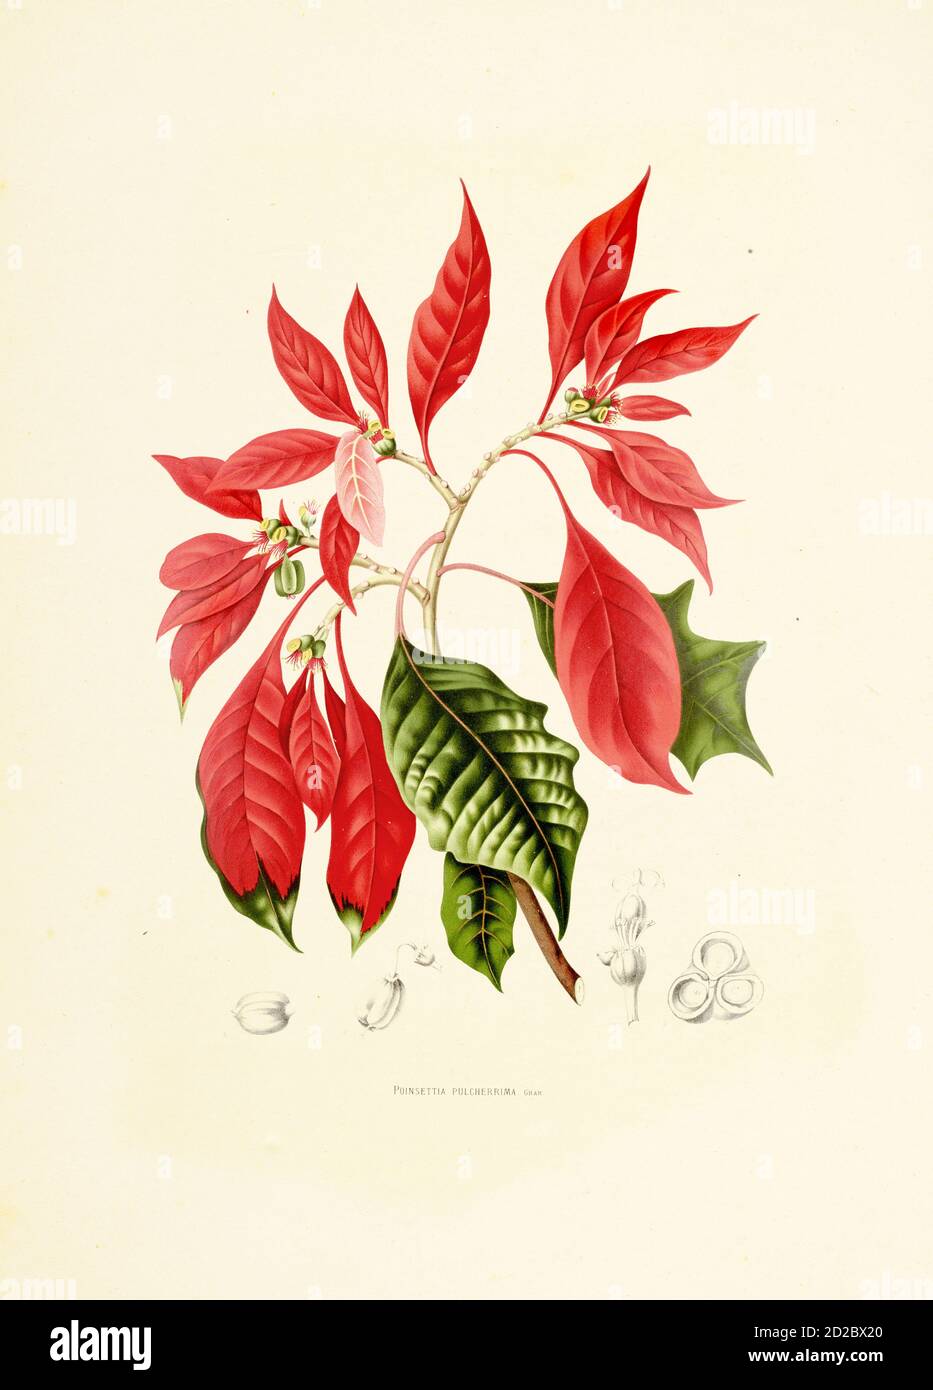 Illustration antique d'un pulcherrima d'euphorbia (également connu sous le nom de poinsettia ou noche buena). Gravure de Berthe Hoola van Nooten du livre fleurs, Banque D'Images